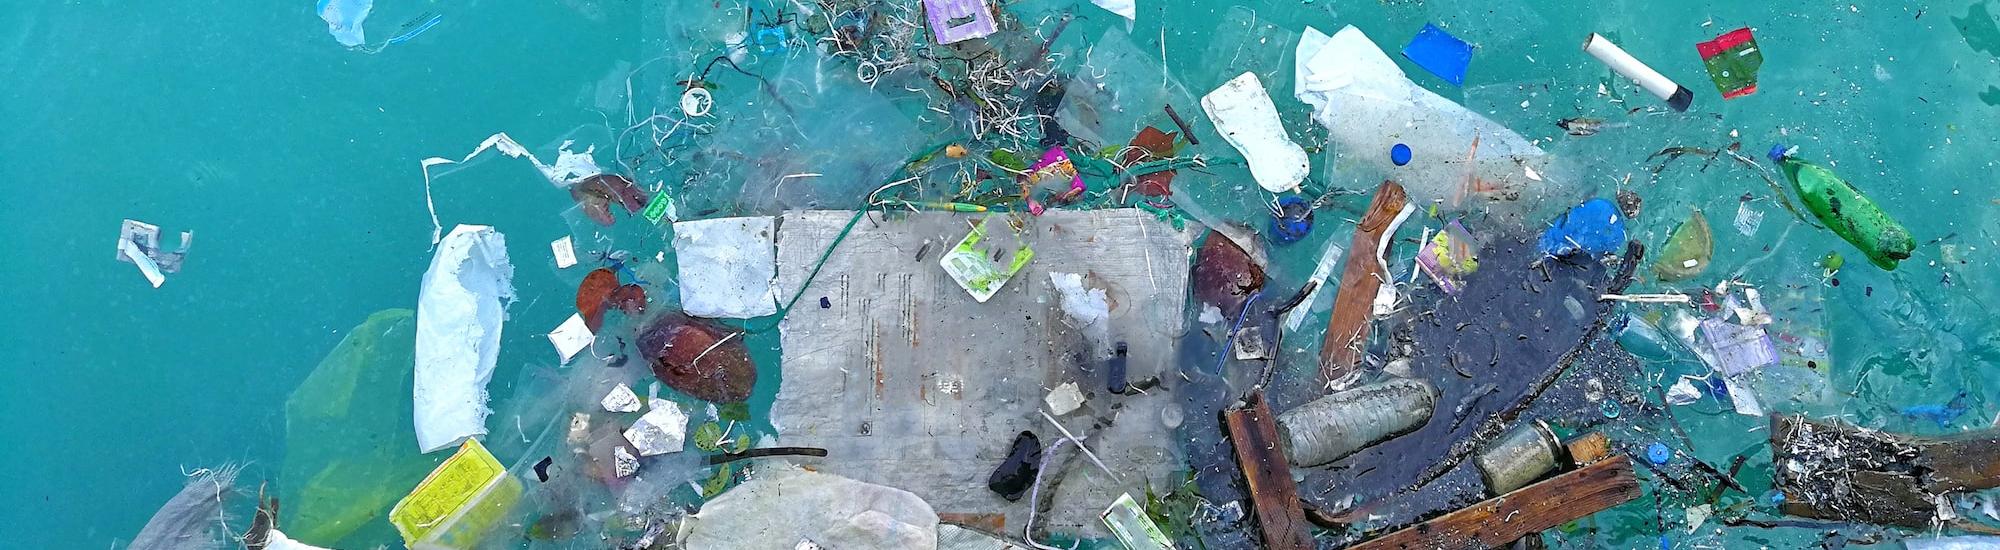 Ученые: океанское дно превратилось в пластиковый резервуар 